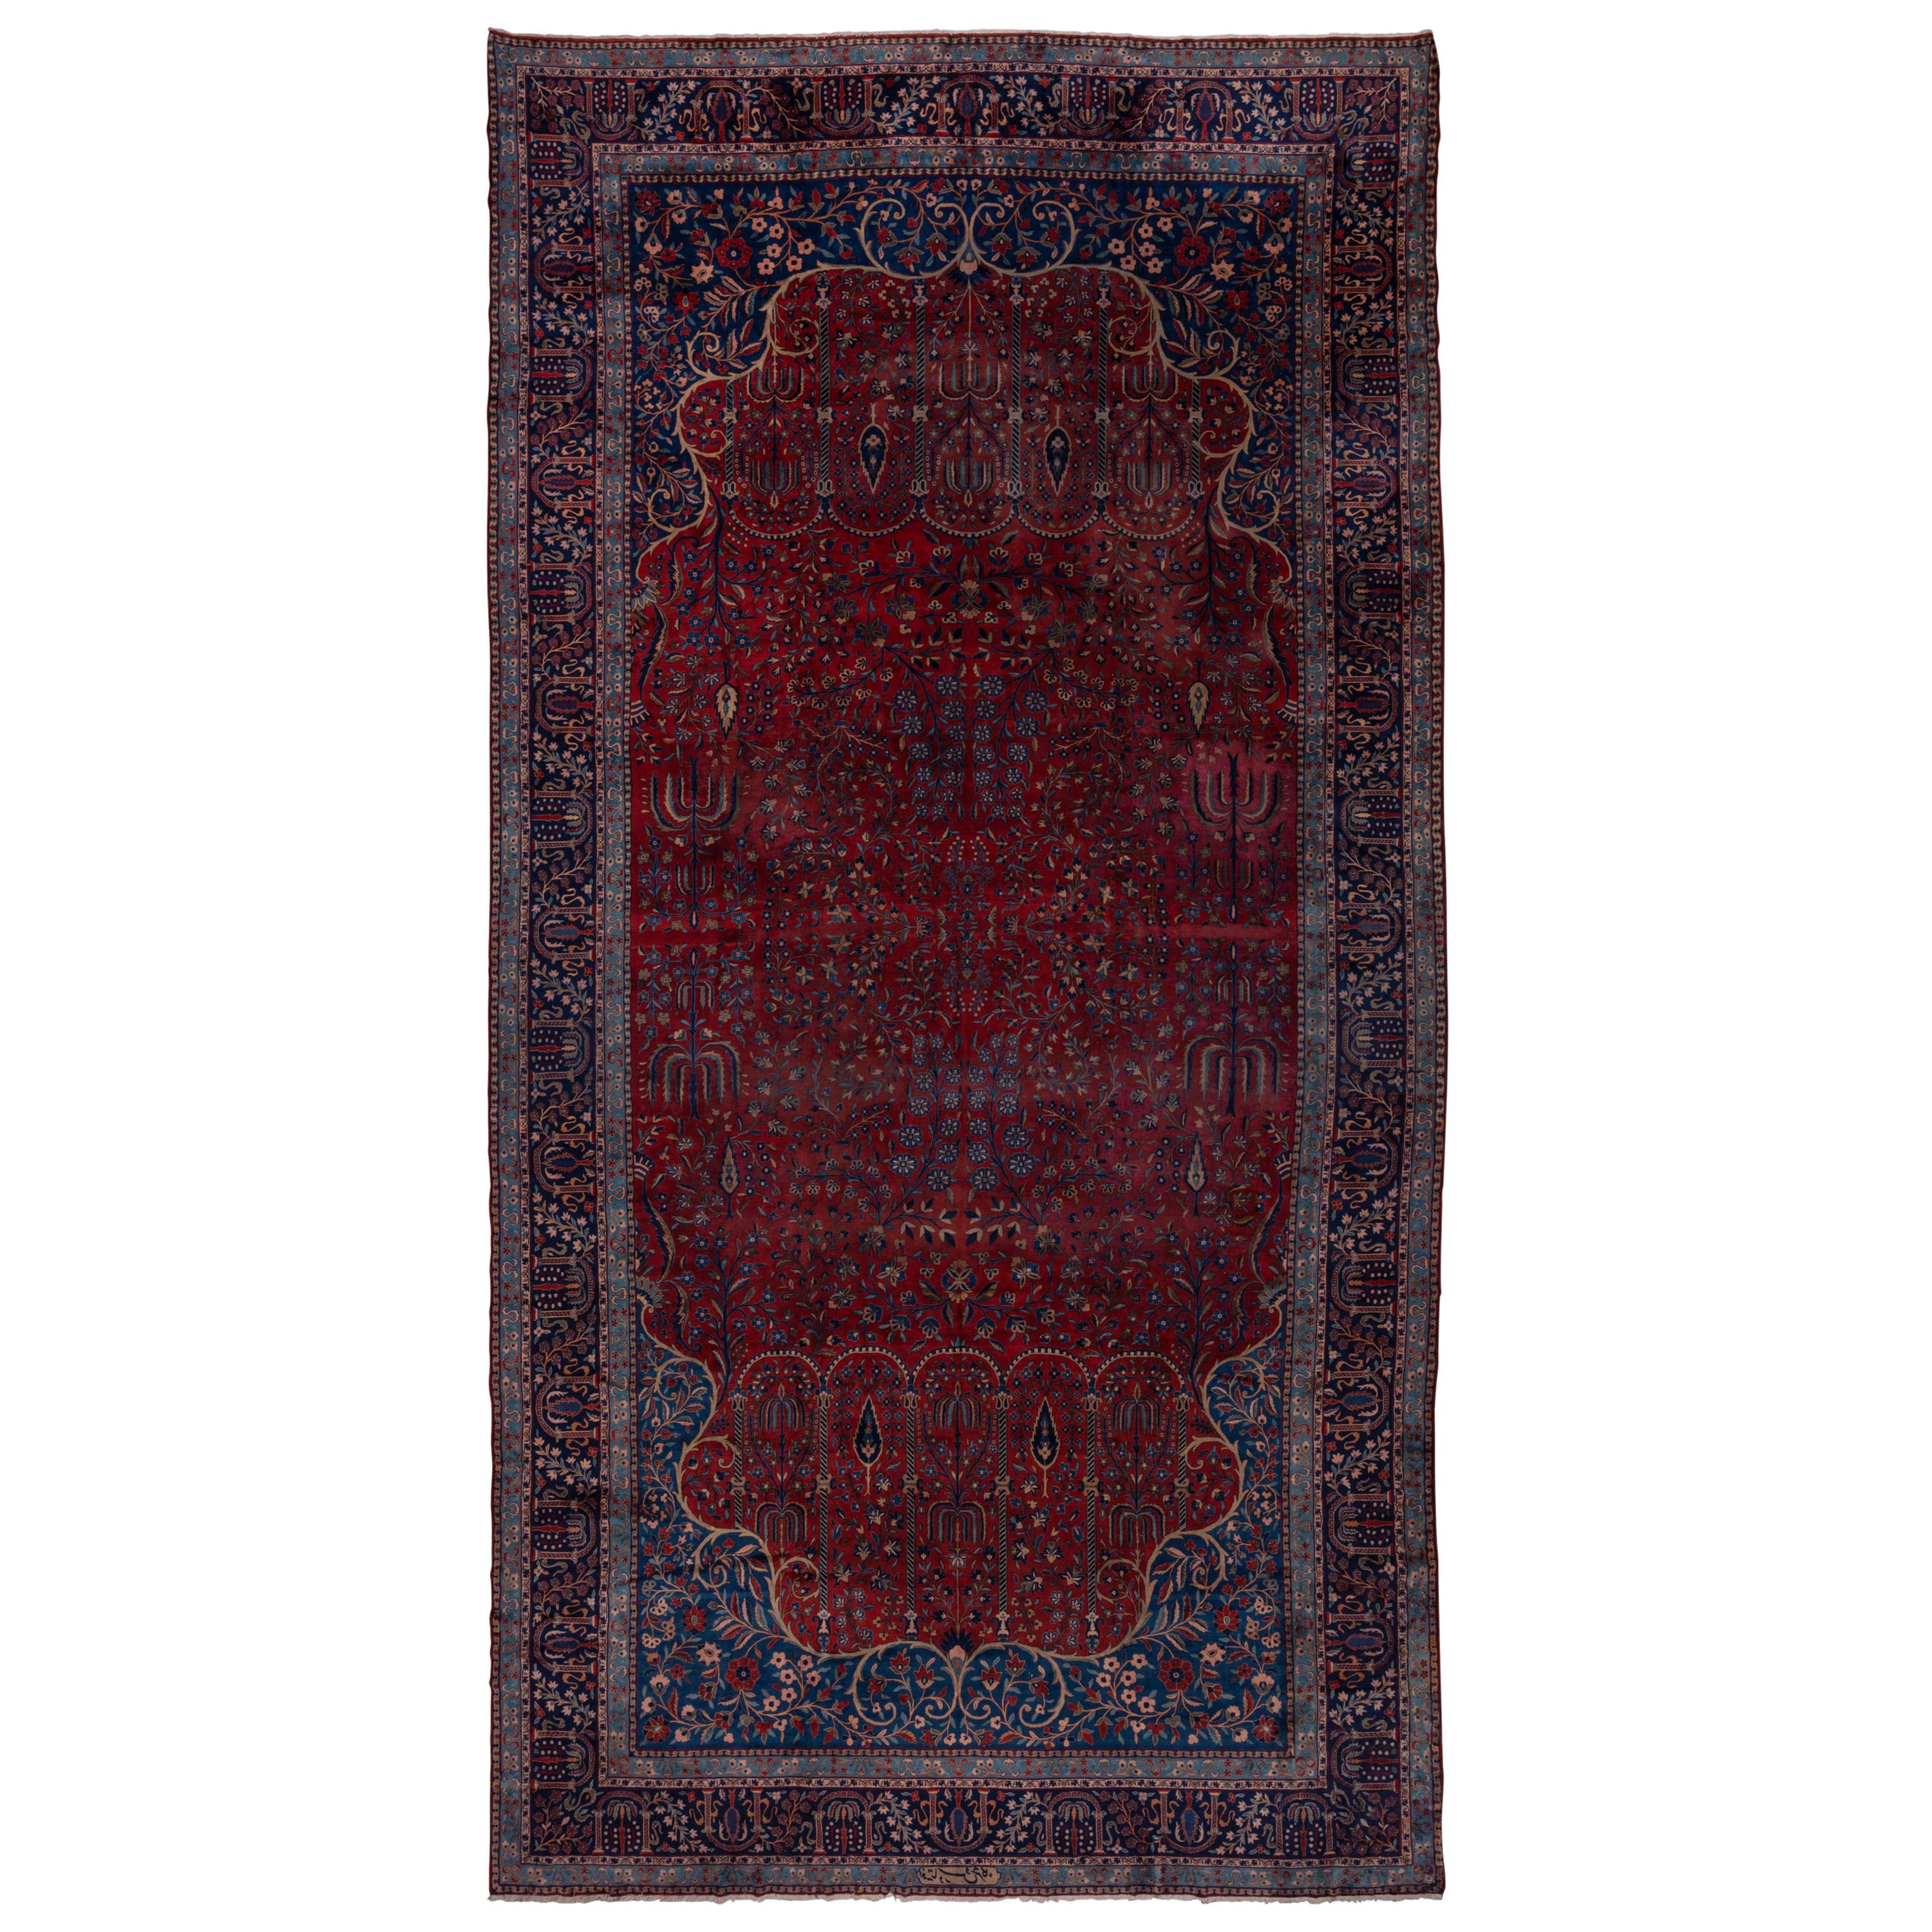 Antique Persian Kashan Mansion Carpet, circa 1920s